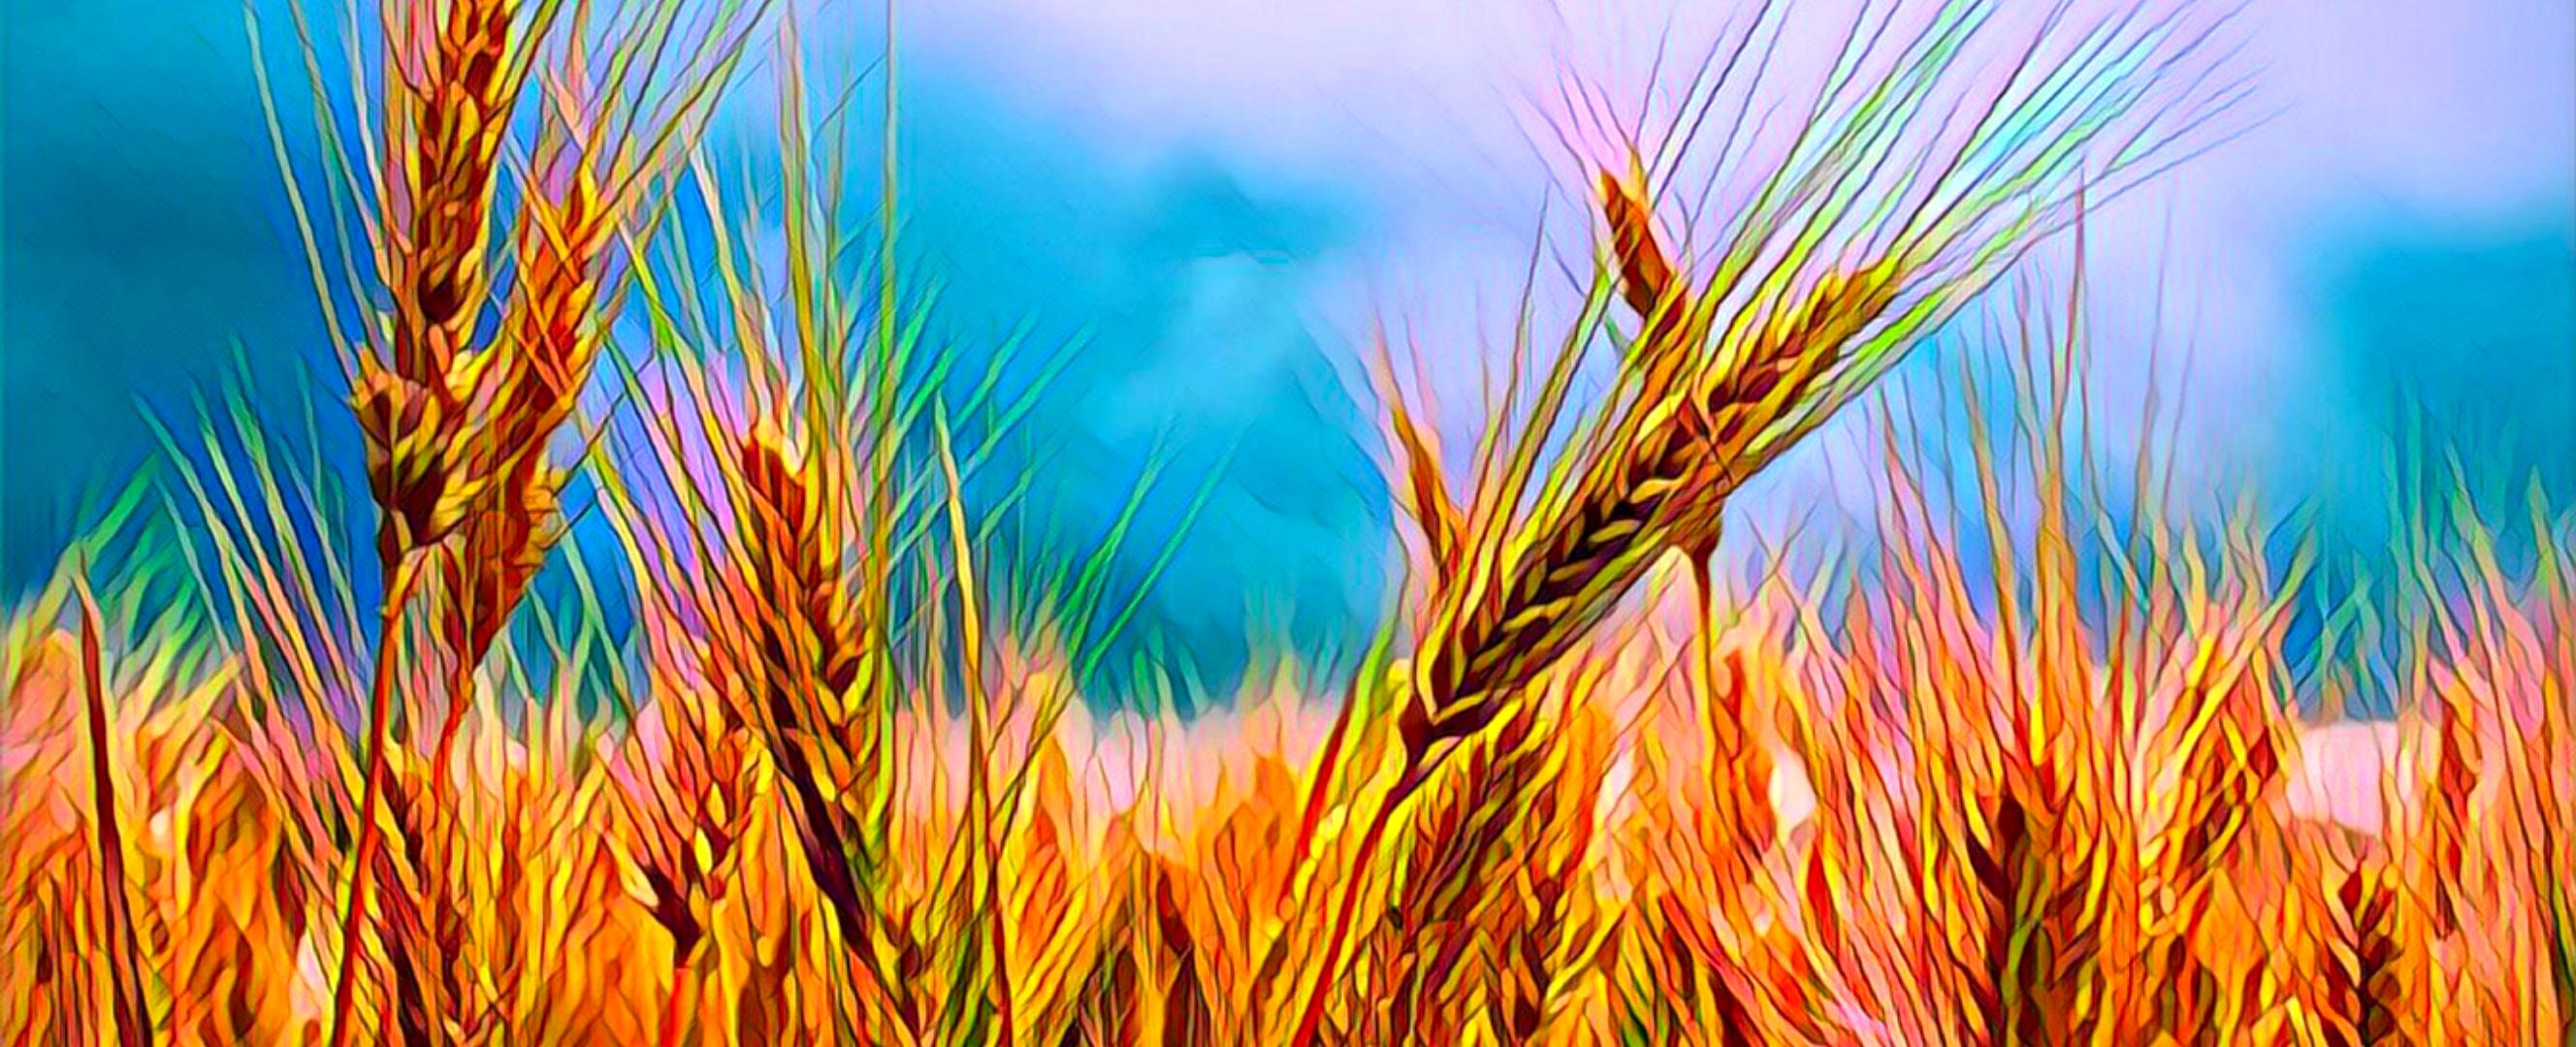 شوک بزرگ دولت به کشاورزان و گندمکاران | افزایش قیمت گندم منتفی شد؟